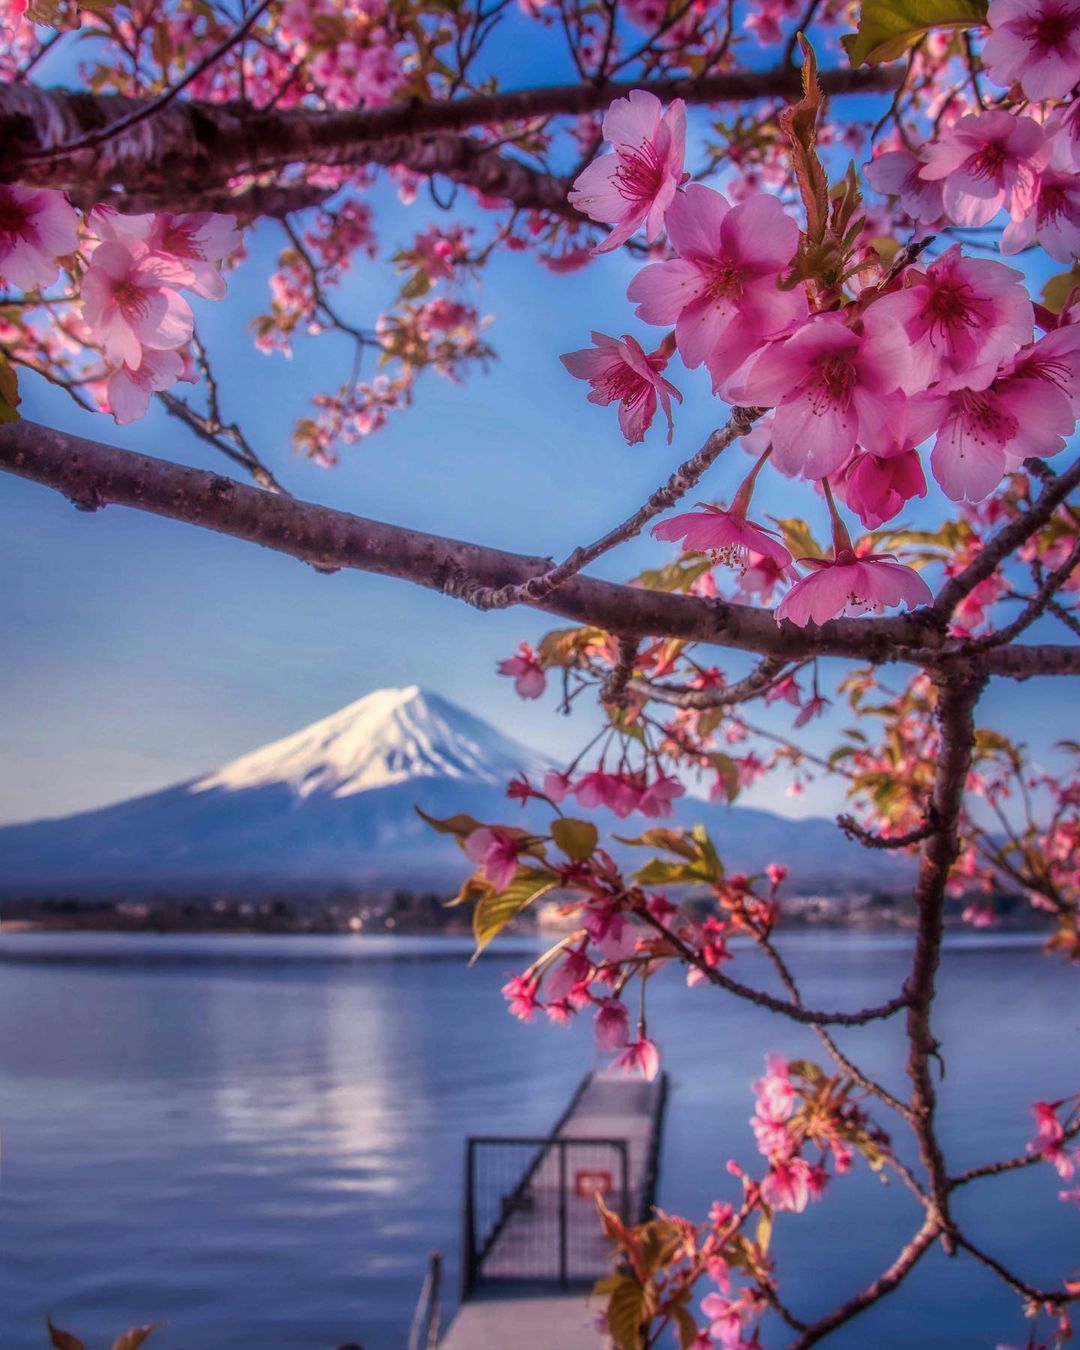 Волшебная японская природа на снимках Макико Самедзимы Макико, Самедзима, Читать, подписчиков, более, Instagram, делится, работами, Своими, ландшафты, природные, яркие, самые, запечатлеть, чтобы, Японии, фотографии, путешествует, природной, пейзажной